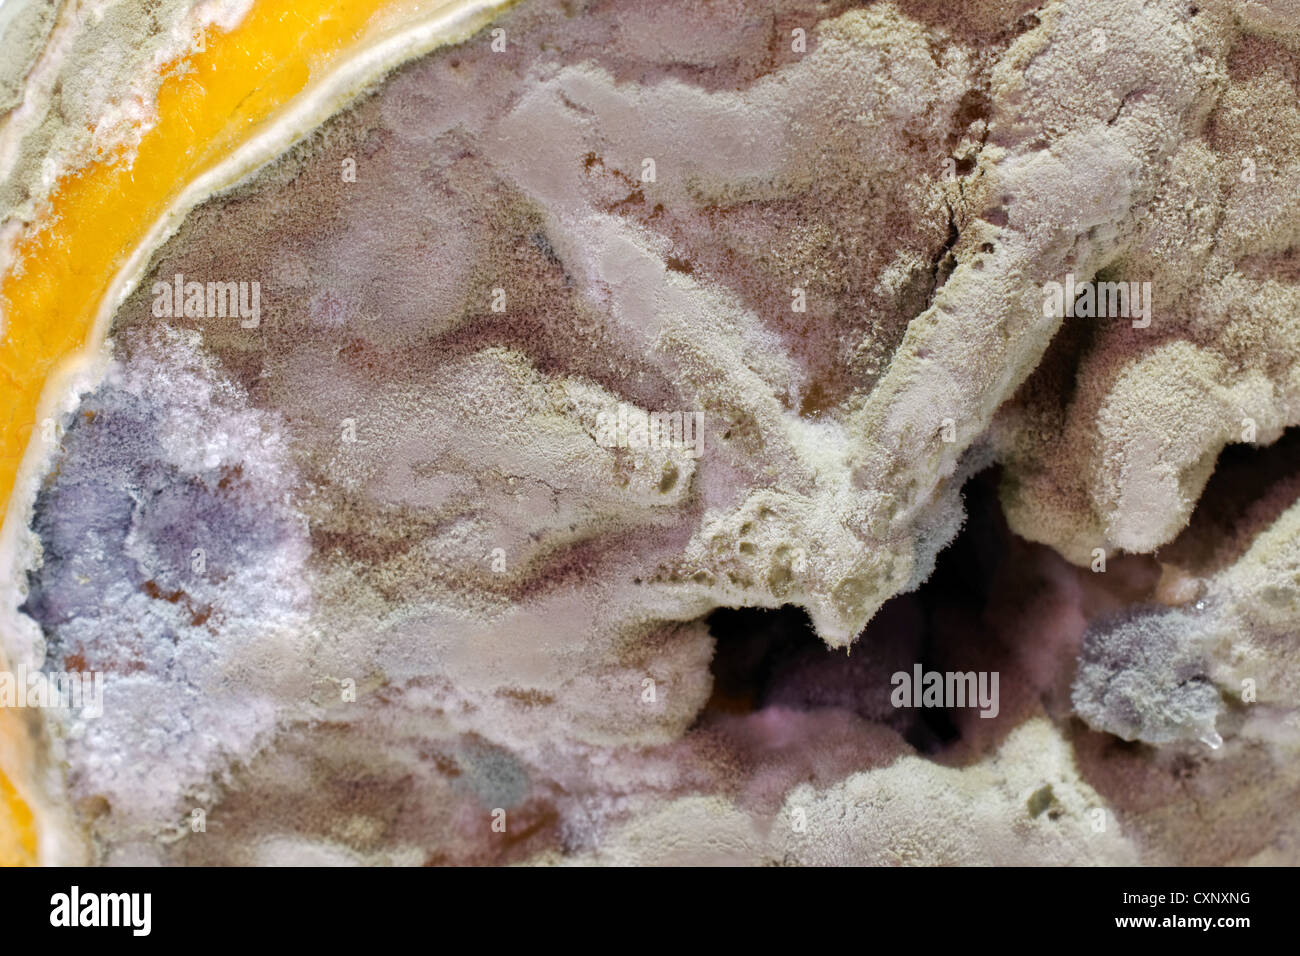 Einige Penicillium und Aspergillus Schimmel auf Zitrone Obst. Stockfoto